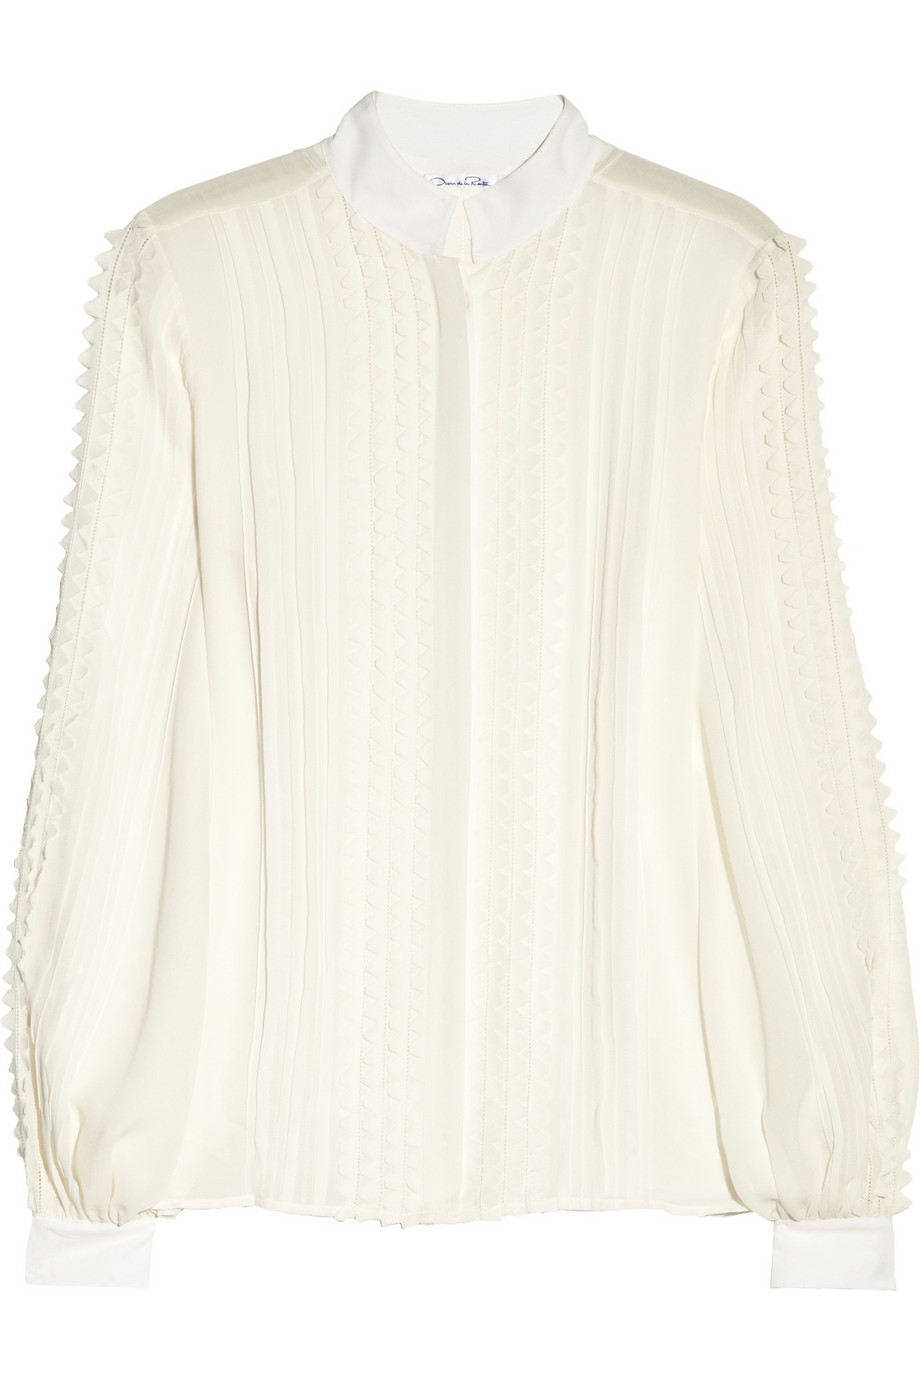 Oscar de la renta Pleated Silk chiffon Blouse in White | Lyst